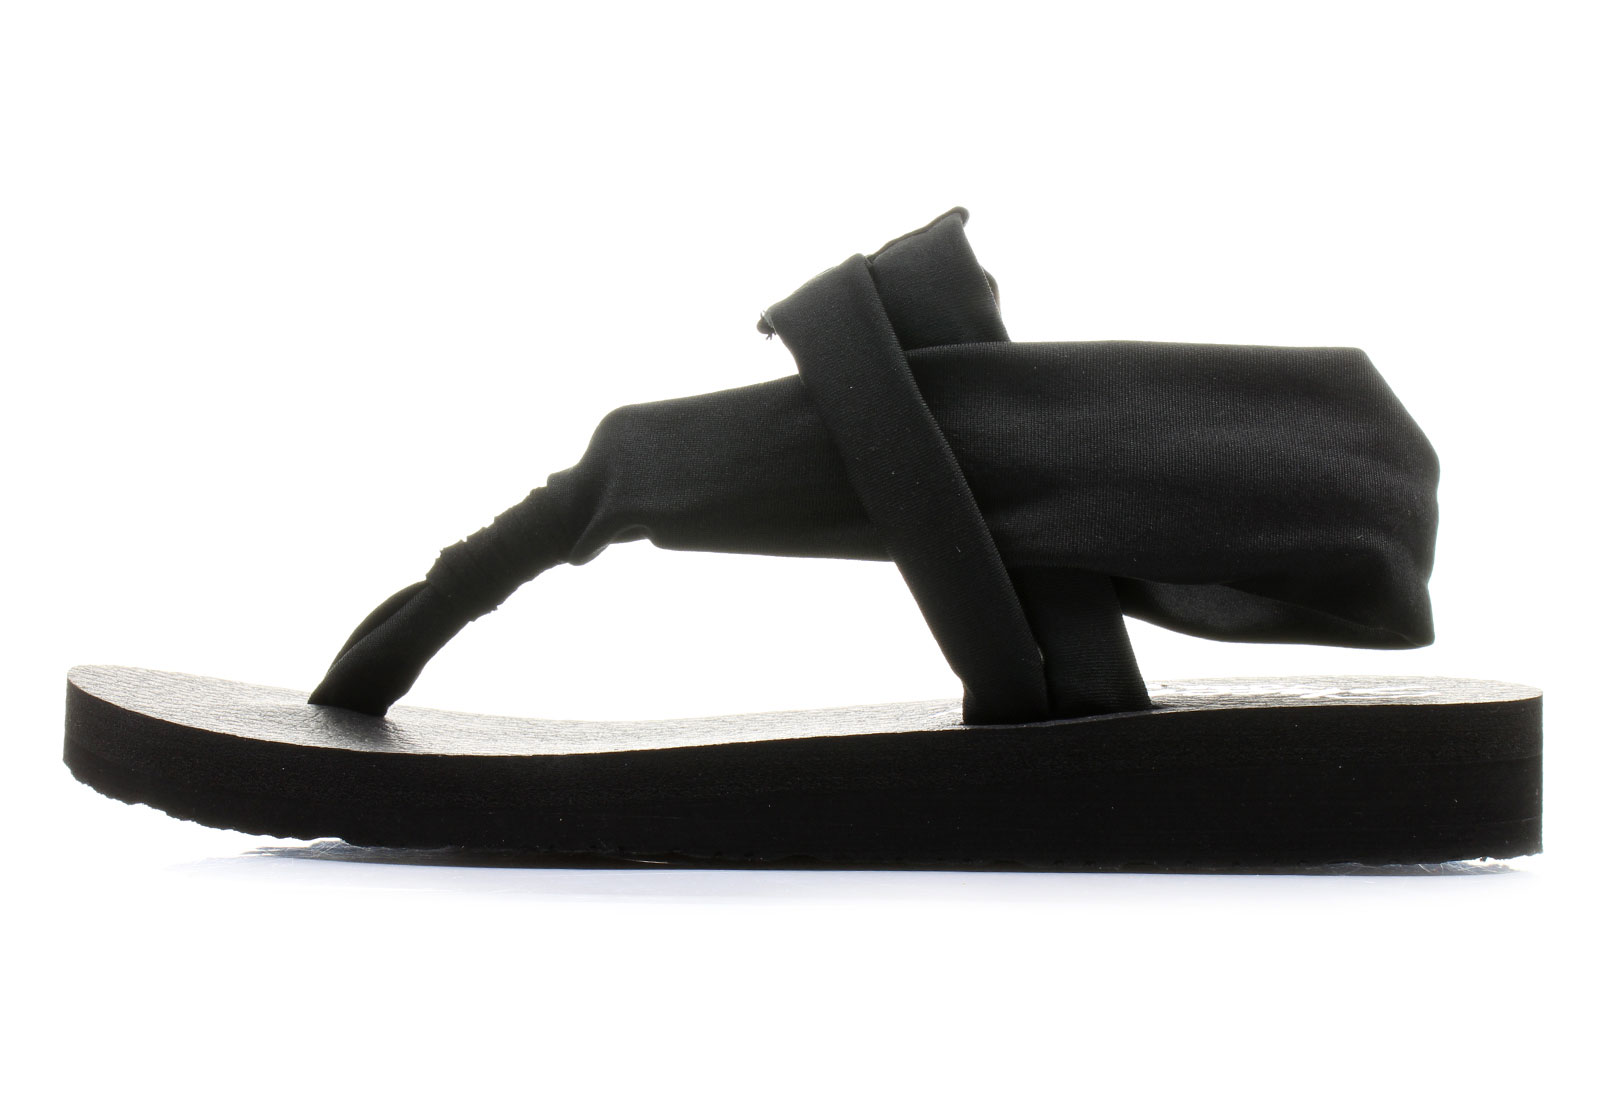 Skechers Sandals - Studio Kicks - 38615-blk - Online shop for sneakers ...